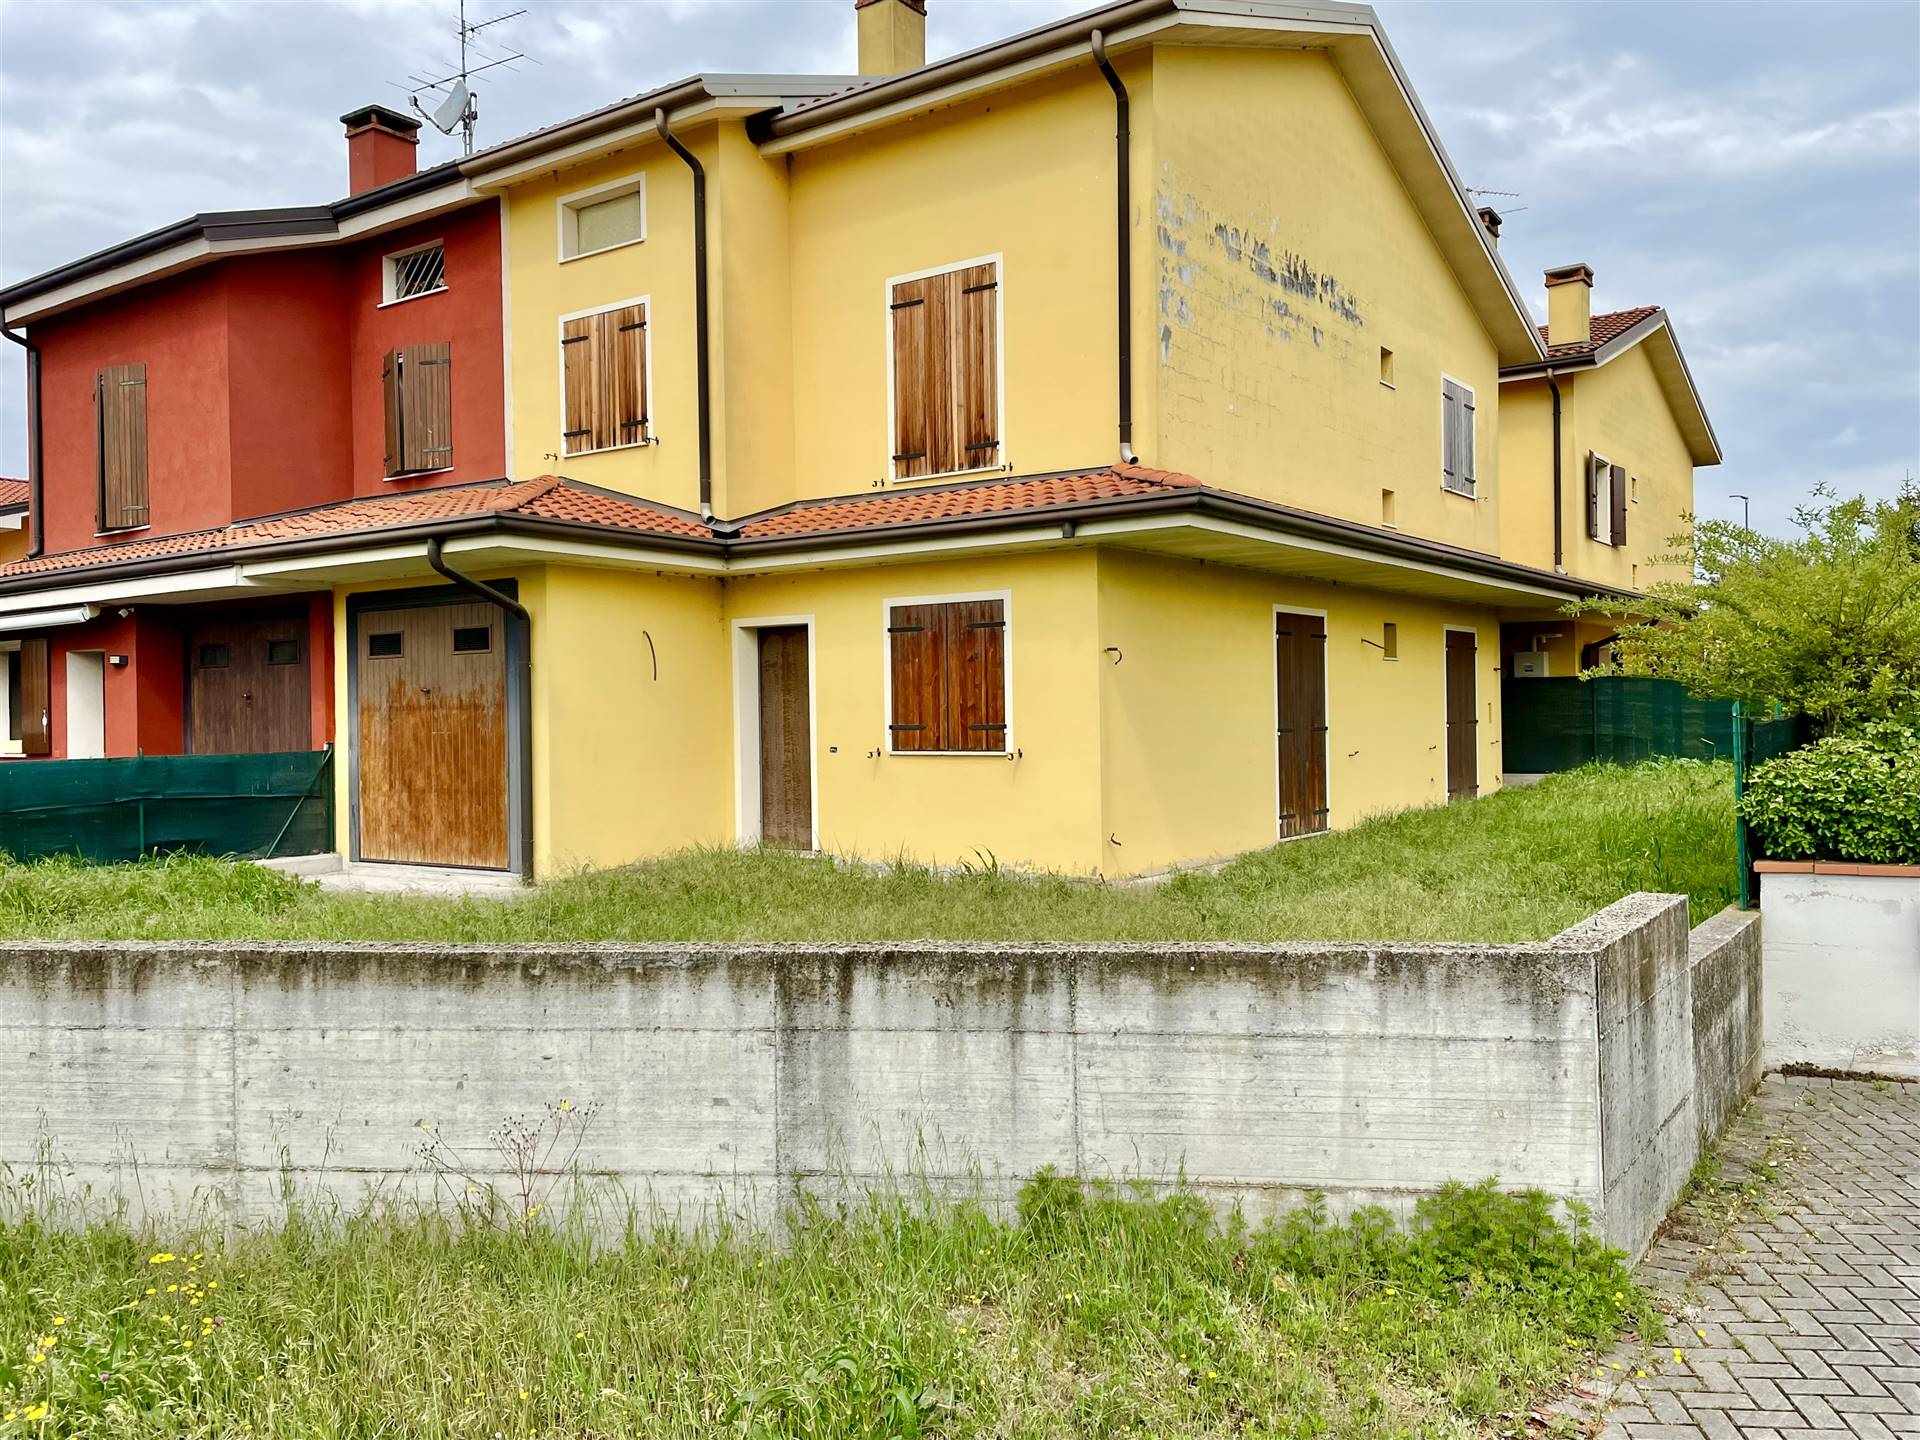 Villa Bifamiliare in vendita a Porto Mantovano, 4 locali, zona Zona: Montata Carra, prezzo € 169.000 | CambioCasa.it